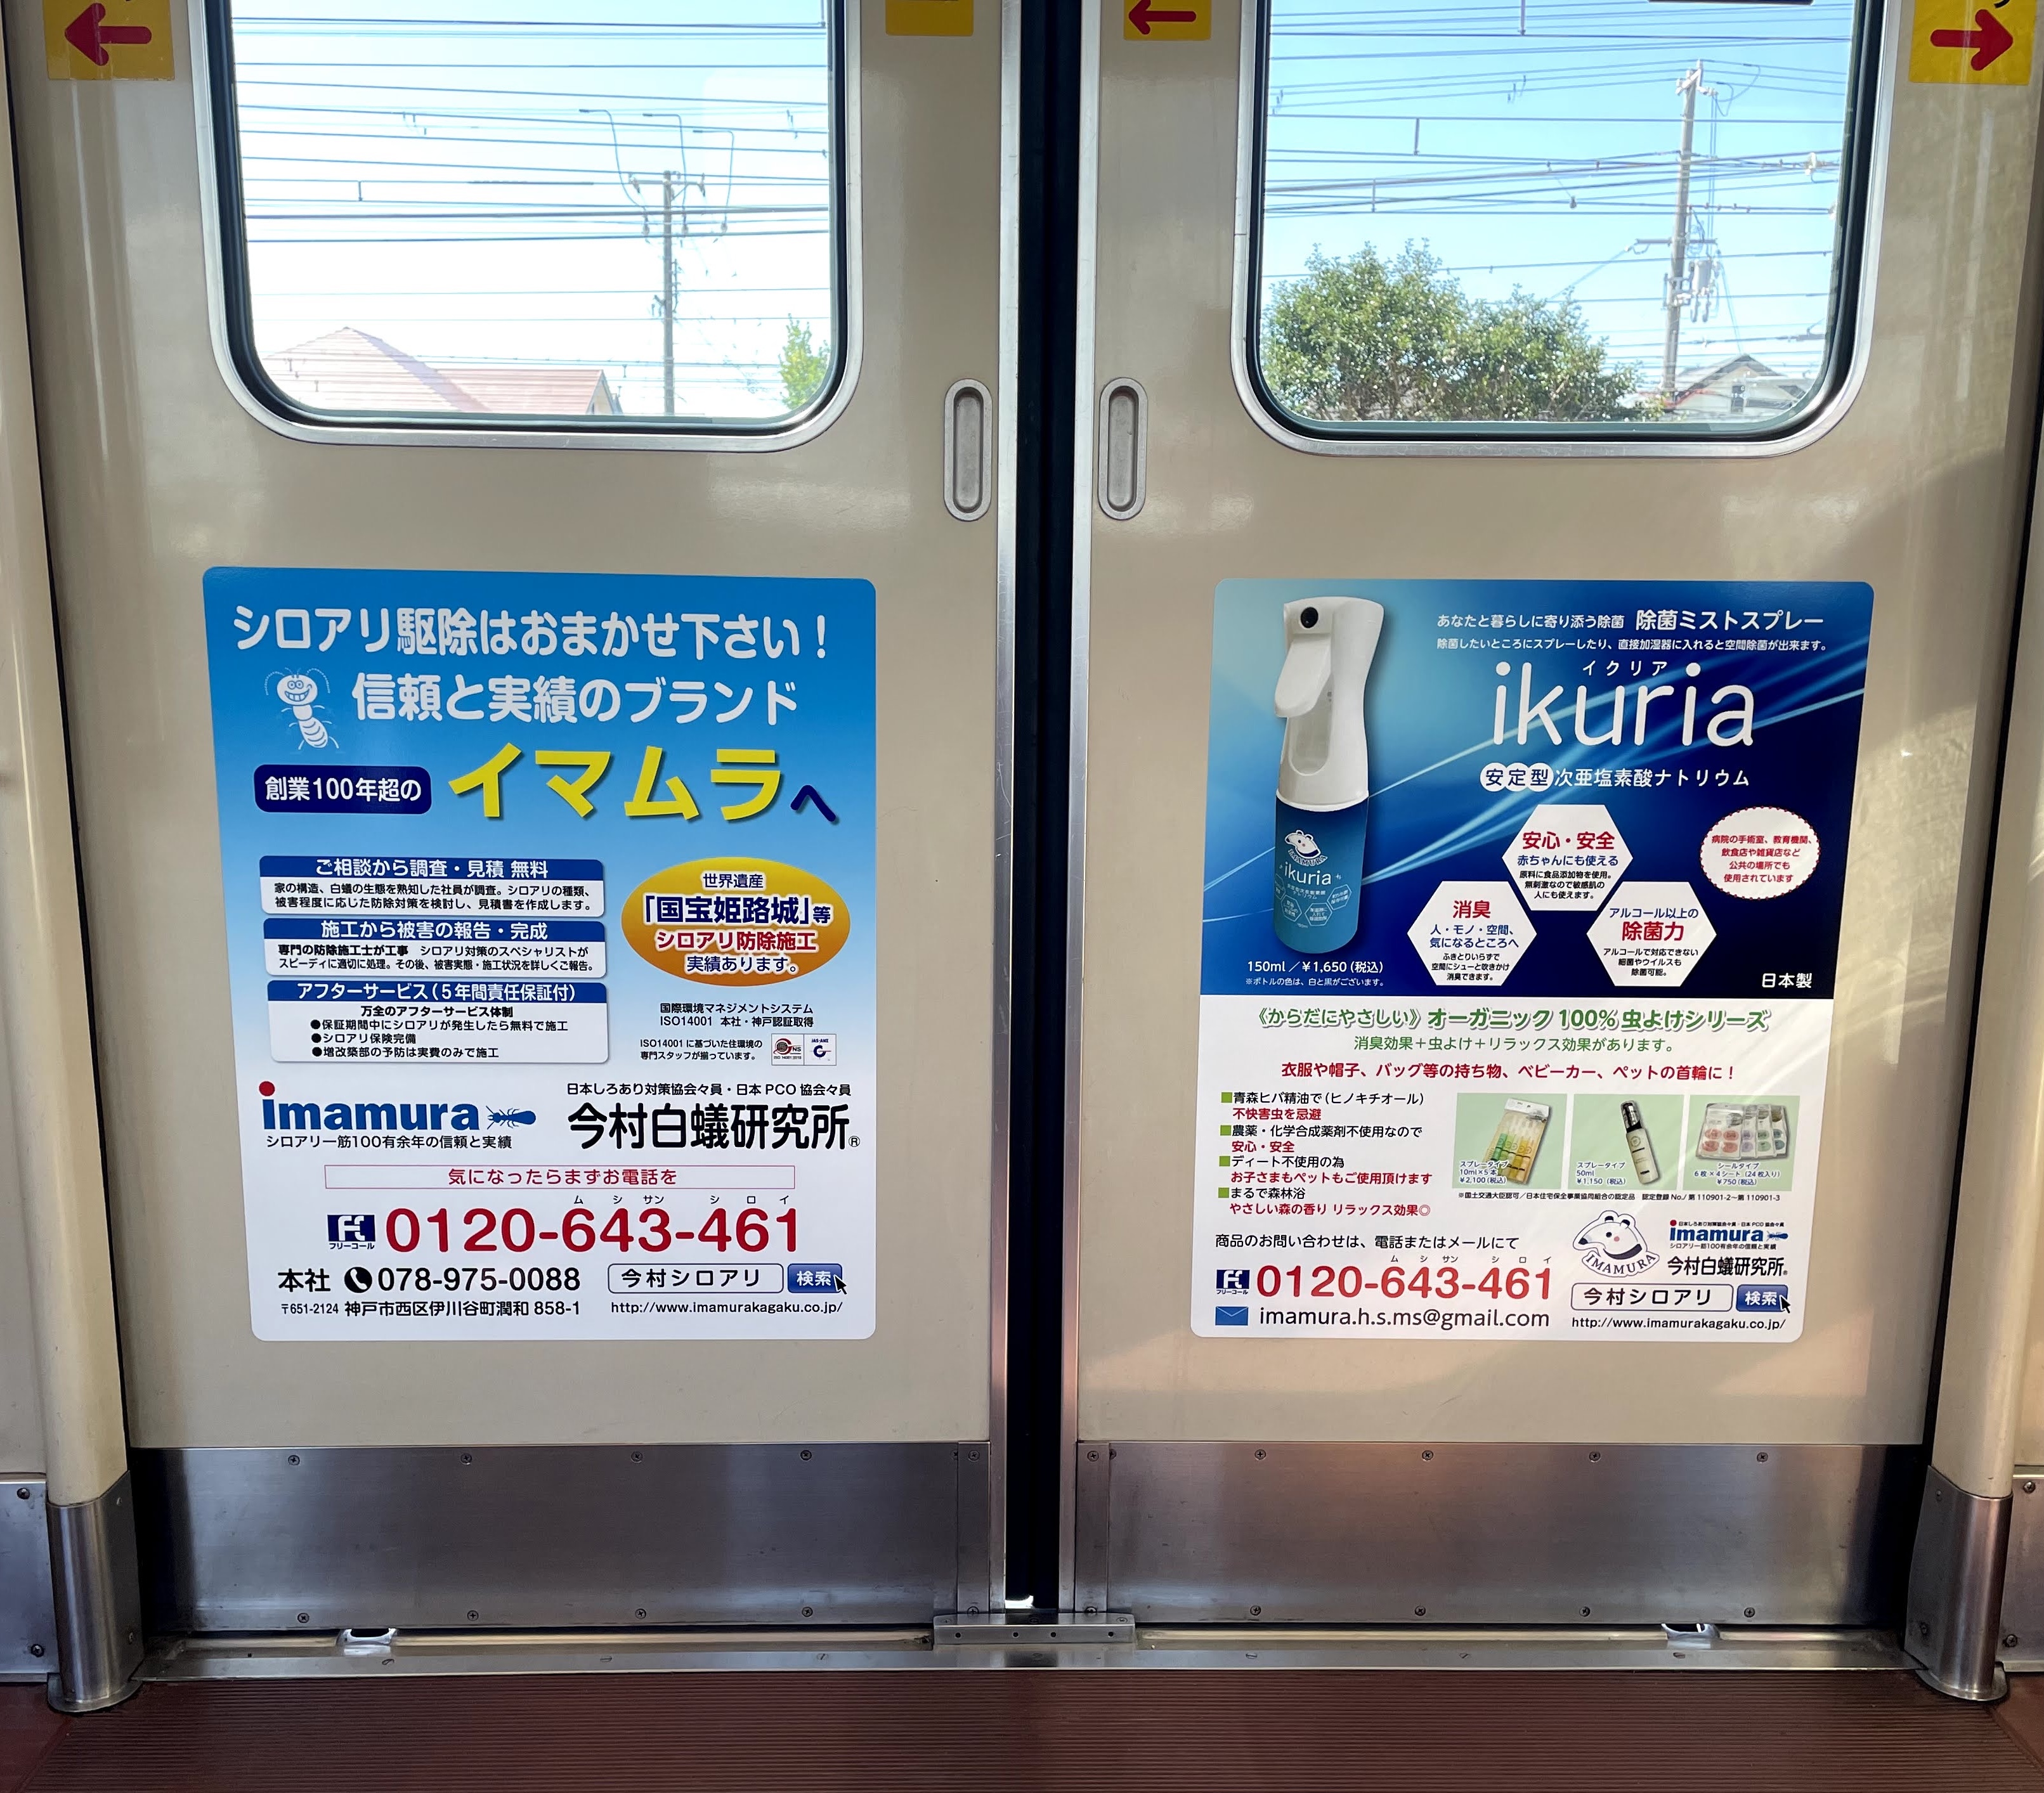 山陽電車広告